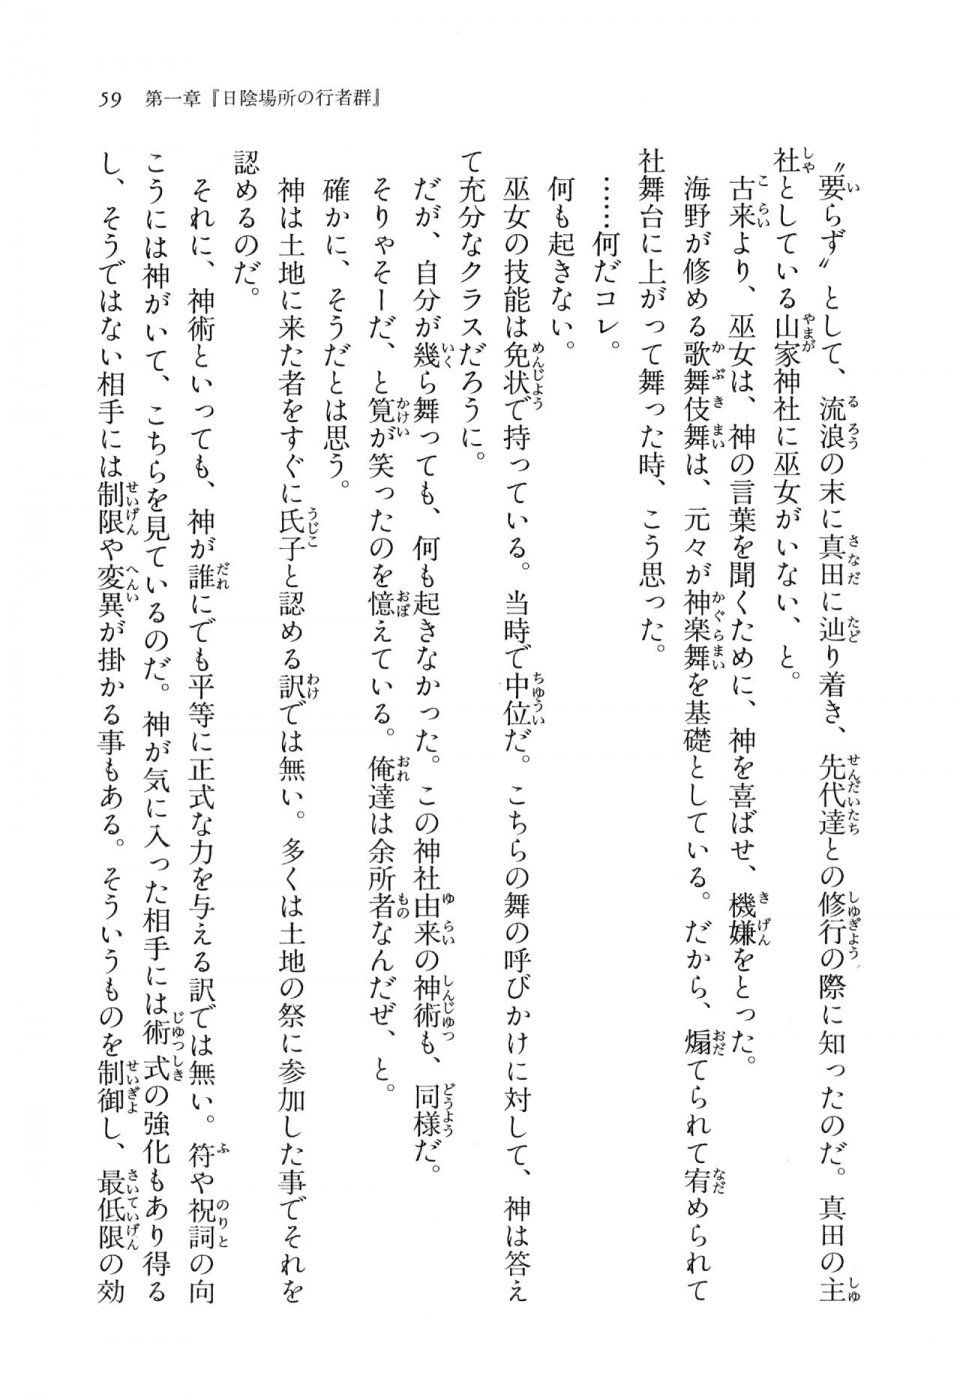 Kyoukai Senjou no Horizon LN Vol 11(5A) - Photo #59